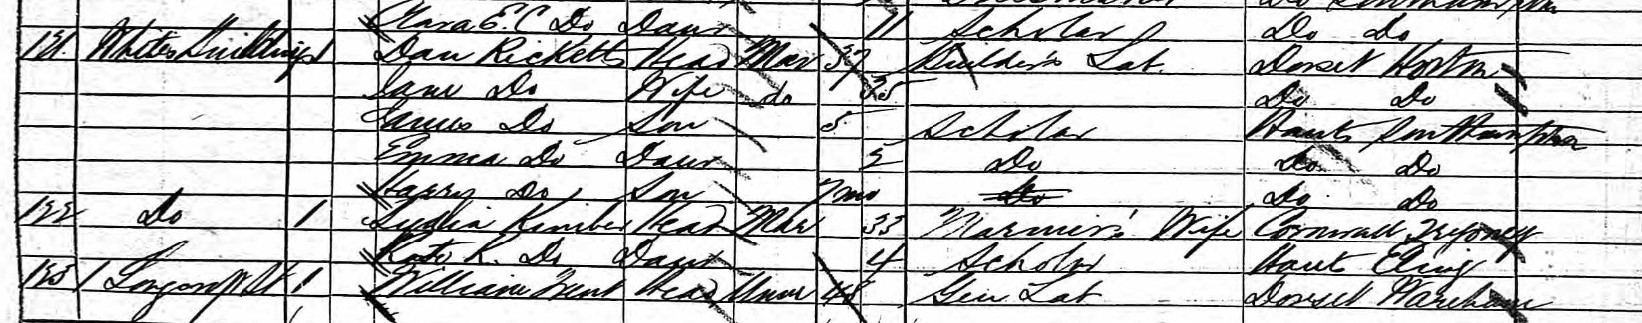 Census 1881 Dan Ricketts